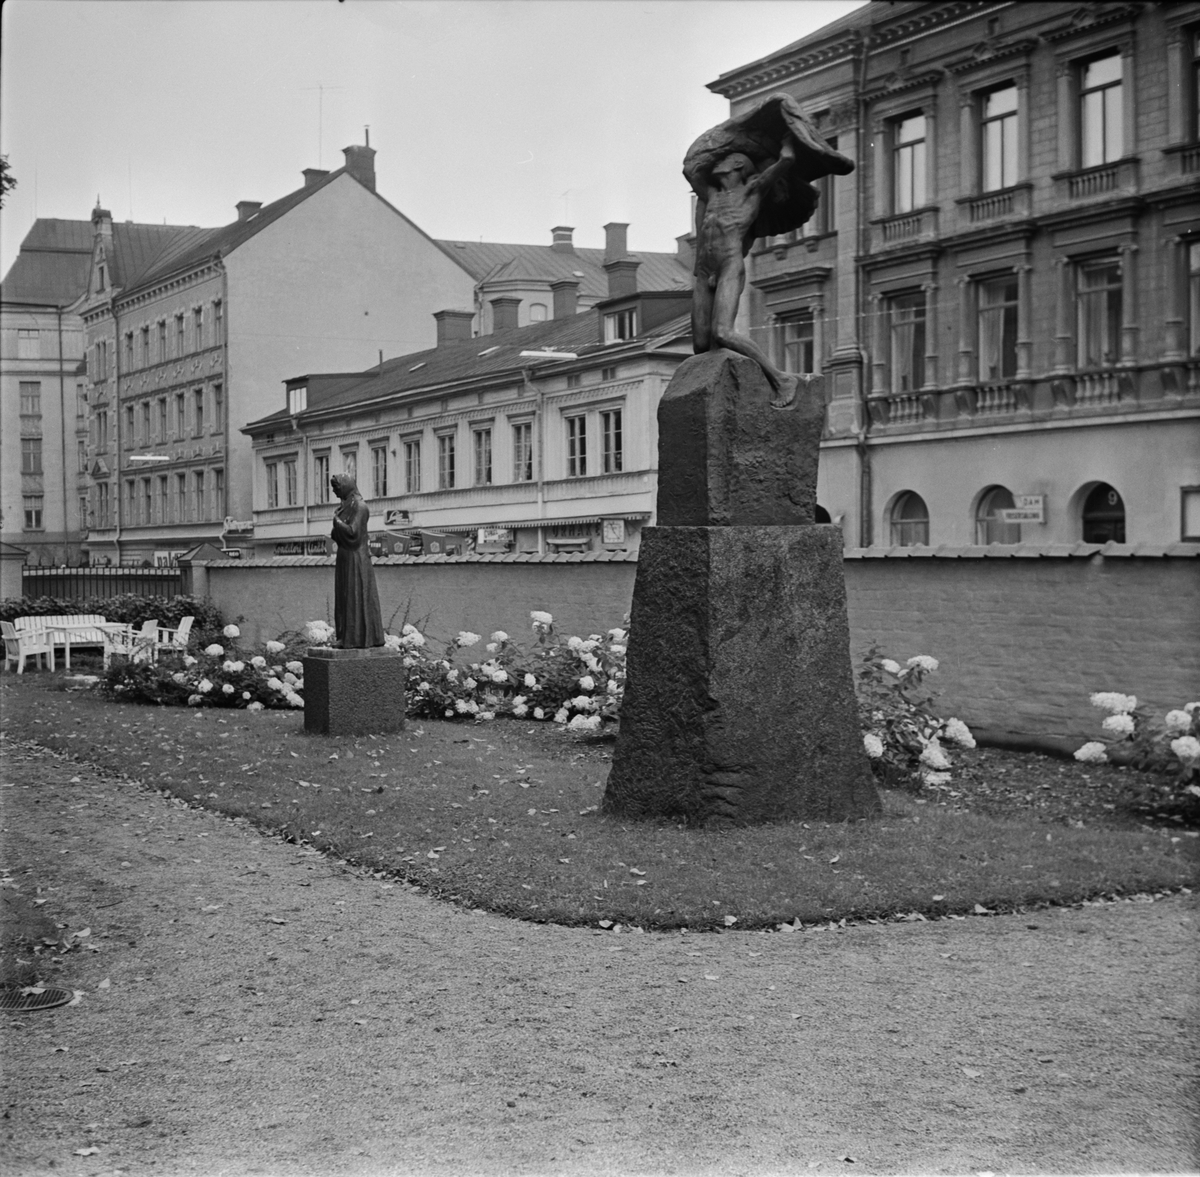 Statyerna Mor av Carl Eldh och Vingarna av Carl Milles vid Uplands Nation, S:t Larsgatan, Uppsala 1957